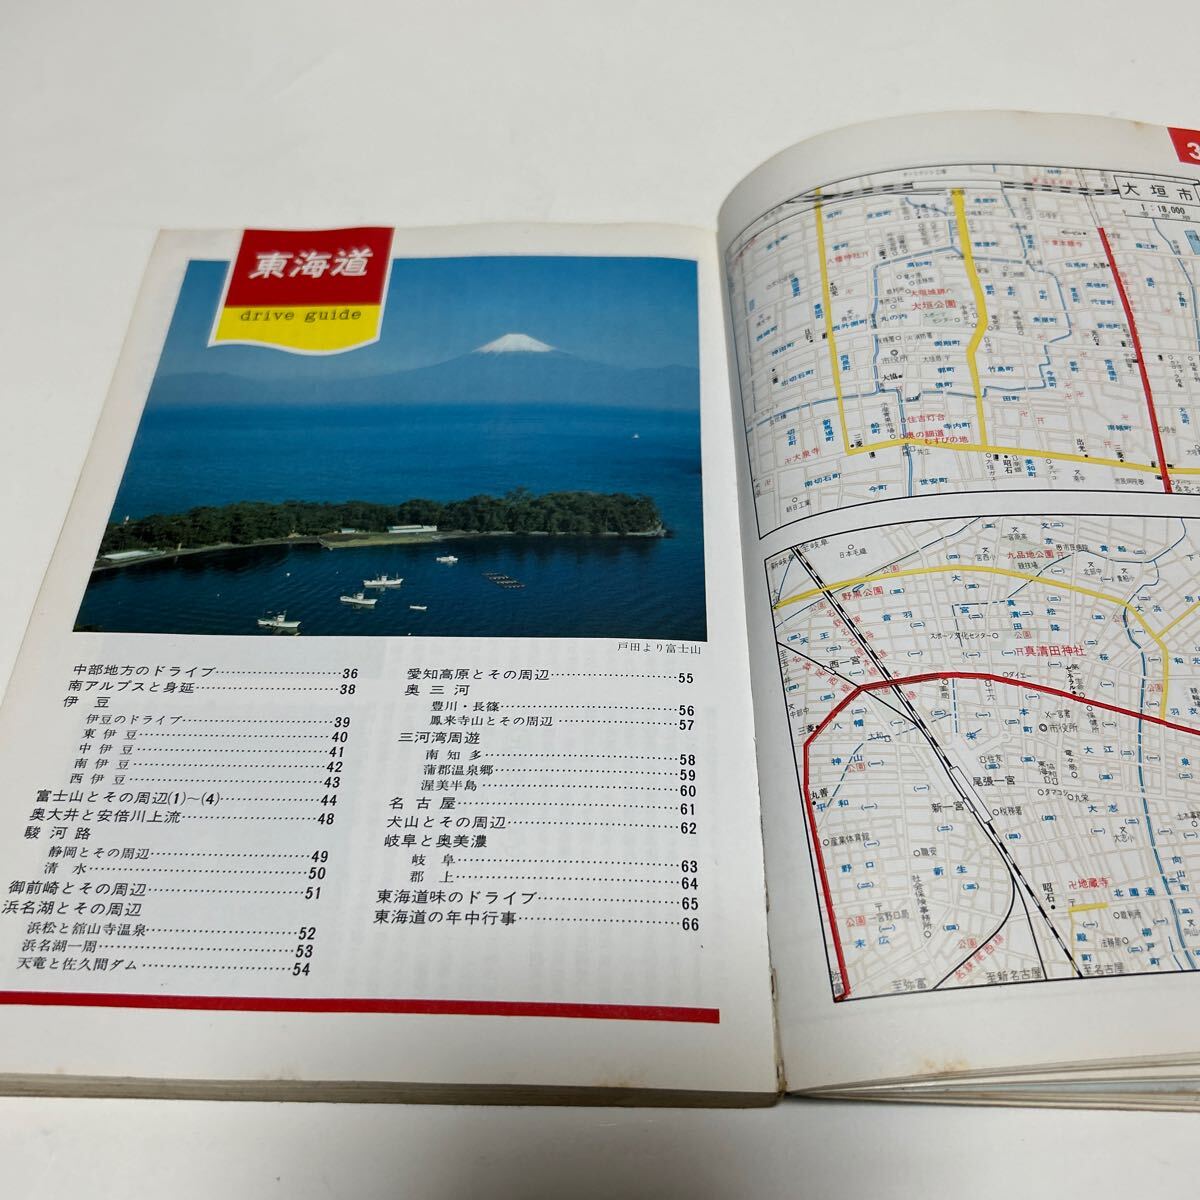  сопровождение карта дорог . Chuubu Hokuriku сборник walajiya Showa 57 год 